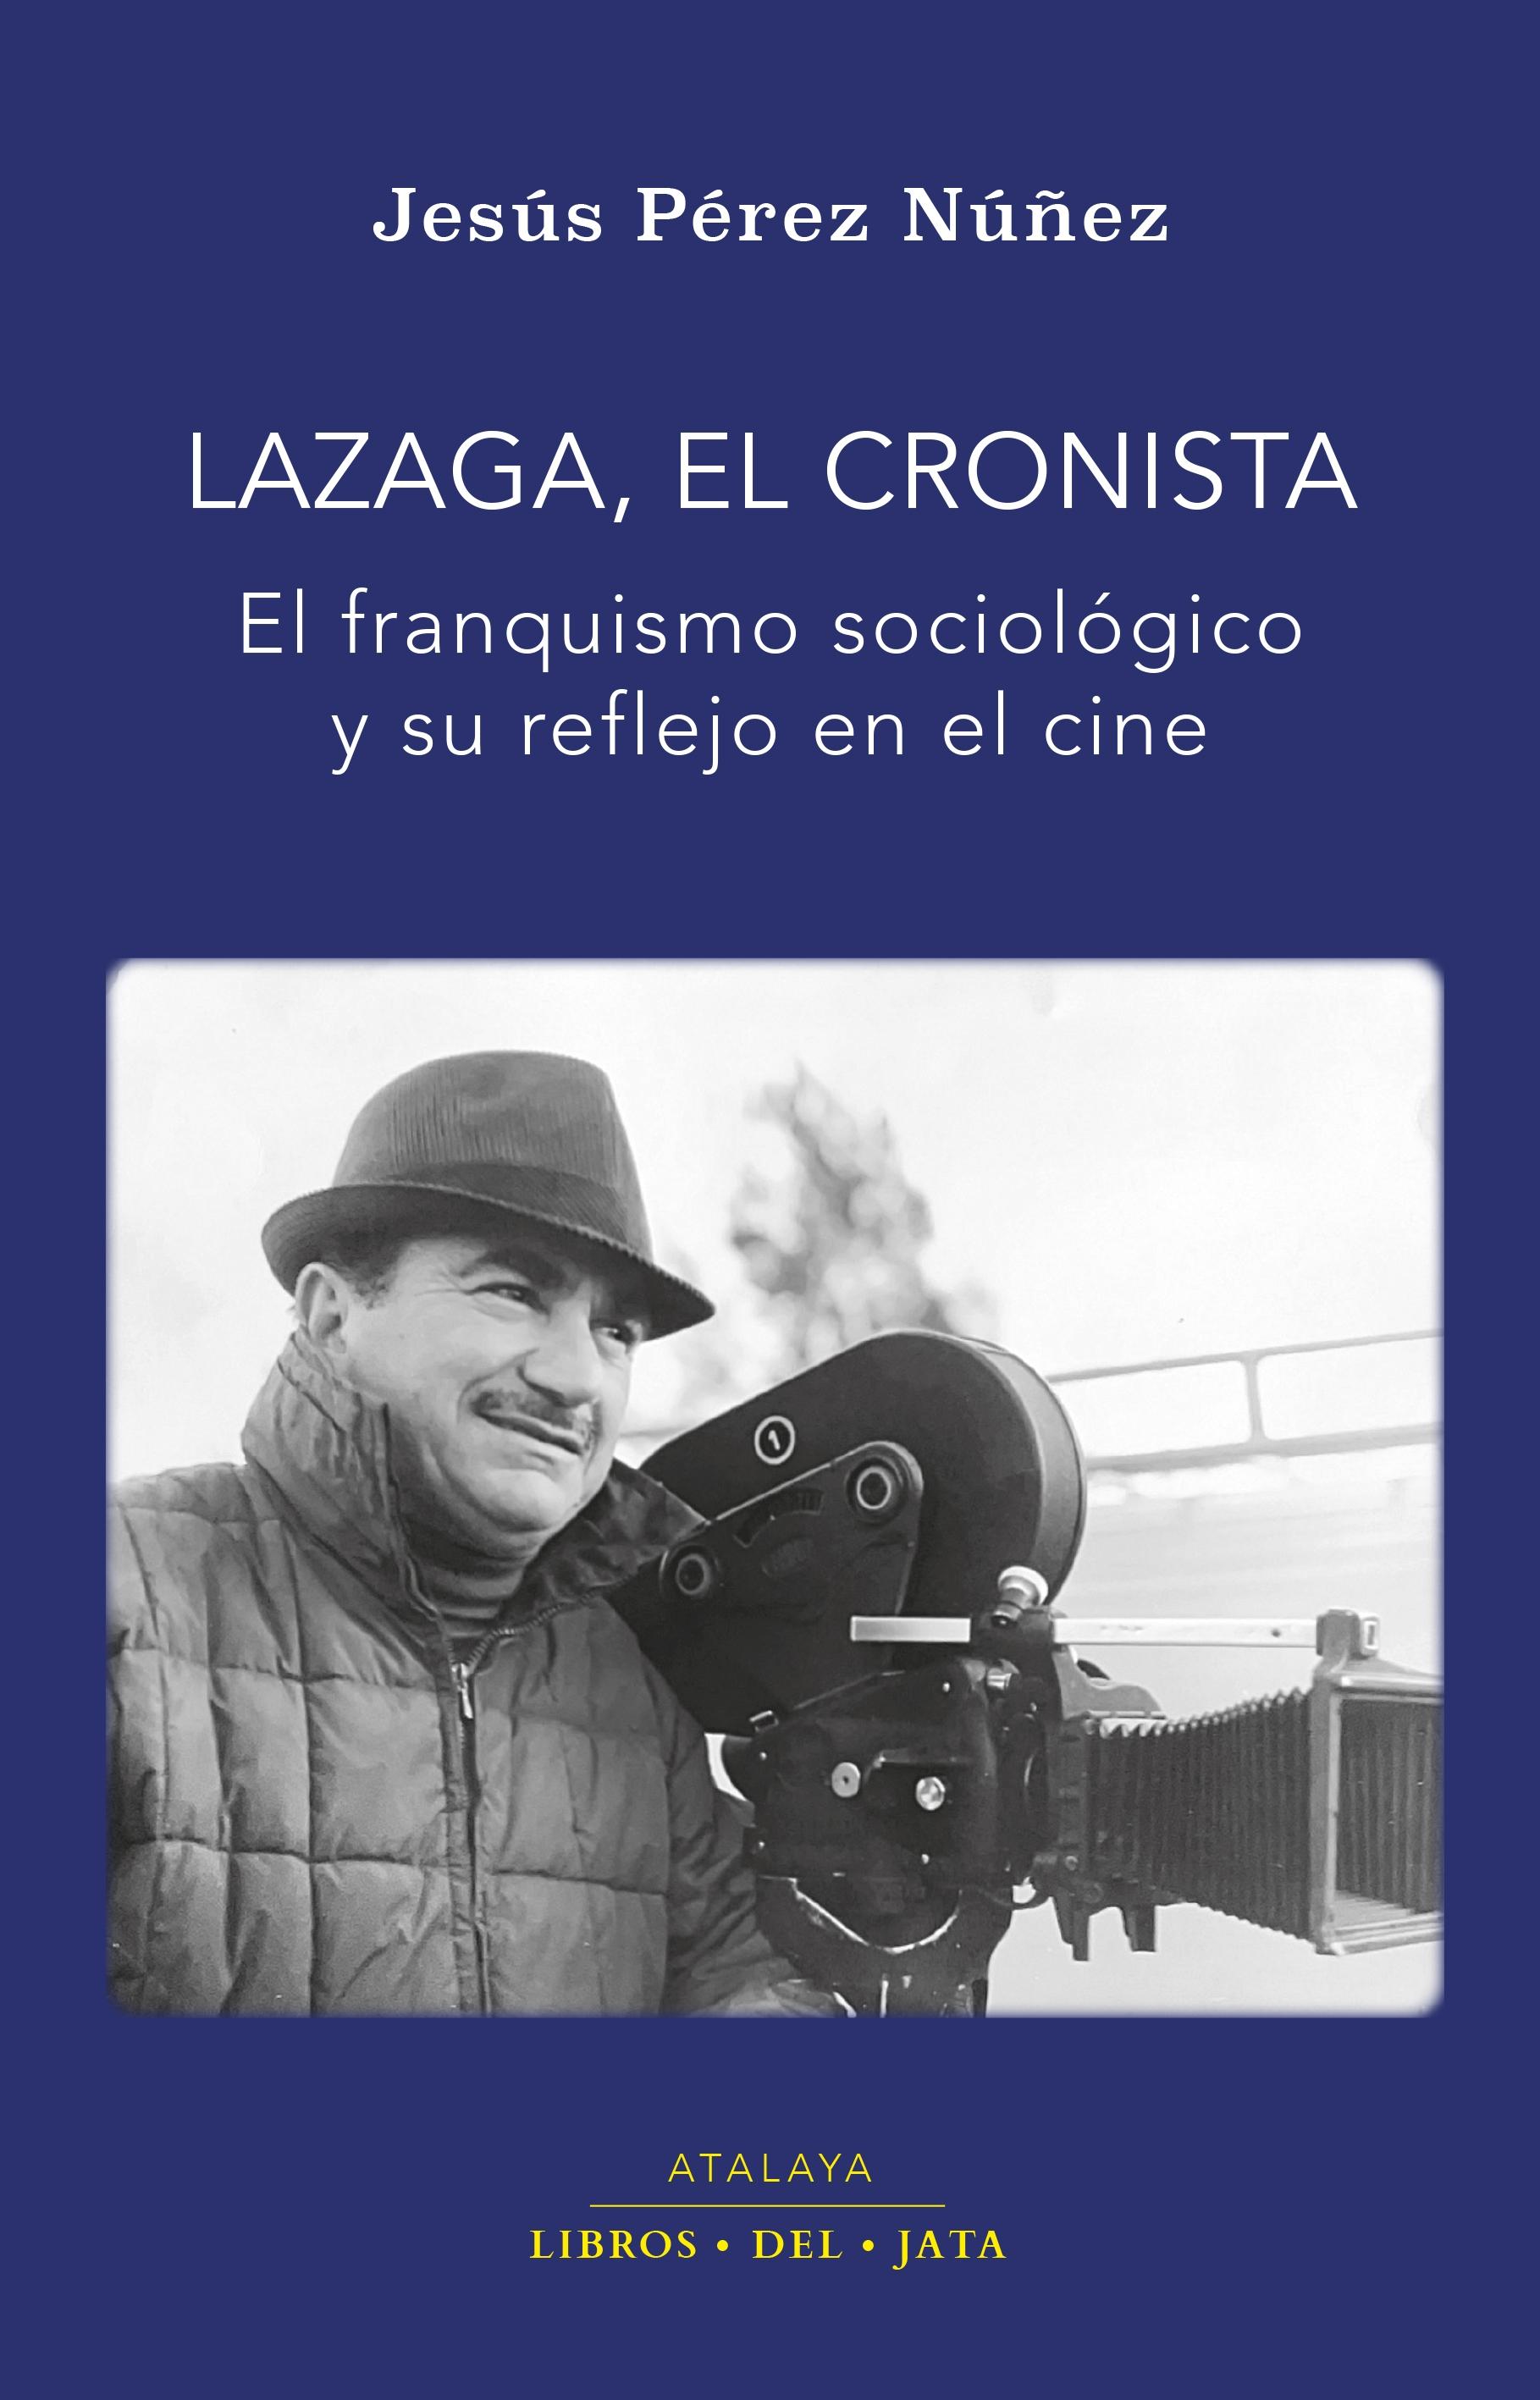 Lazaga, el cronista "El franquismo sociológico y su reflejo en el cine"